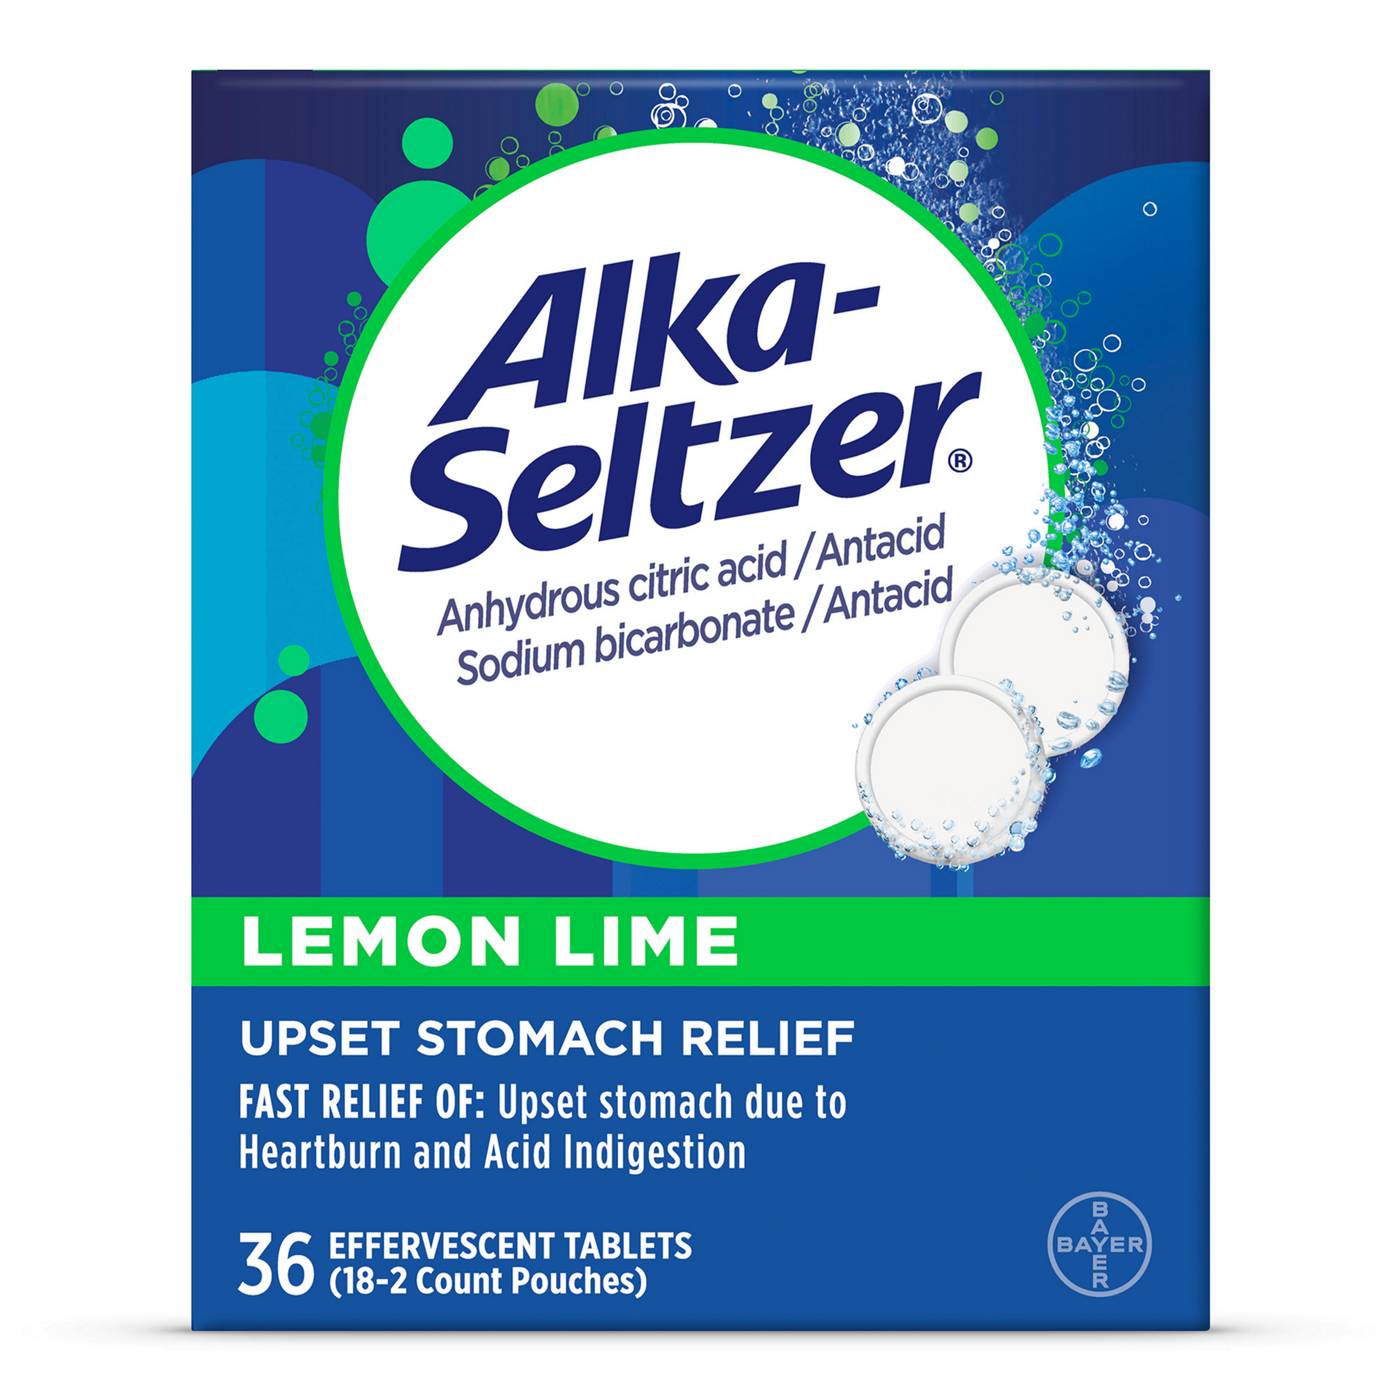 Alka-Seltzer Lemon Lime Tablets; image 1 of 3